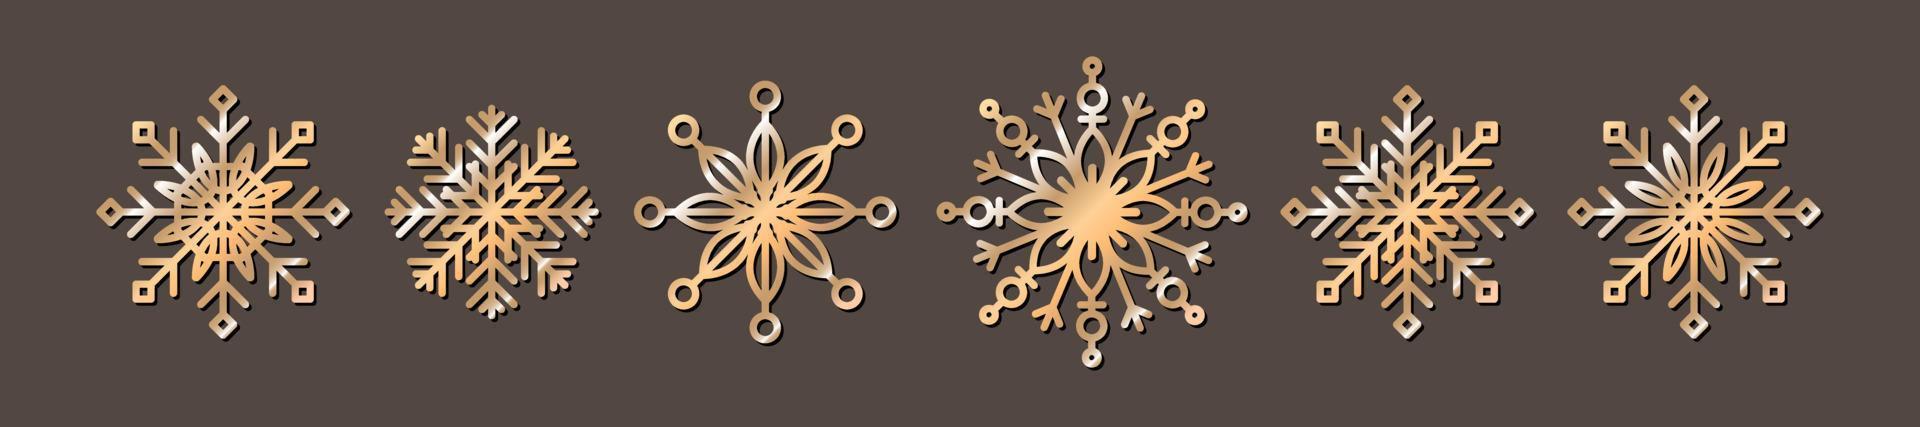 vektor uppsättning ikoner av gyllene metall snöflingor. begreppet jul, firande, frost, snöflinga, dekorativ symbol, semester.